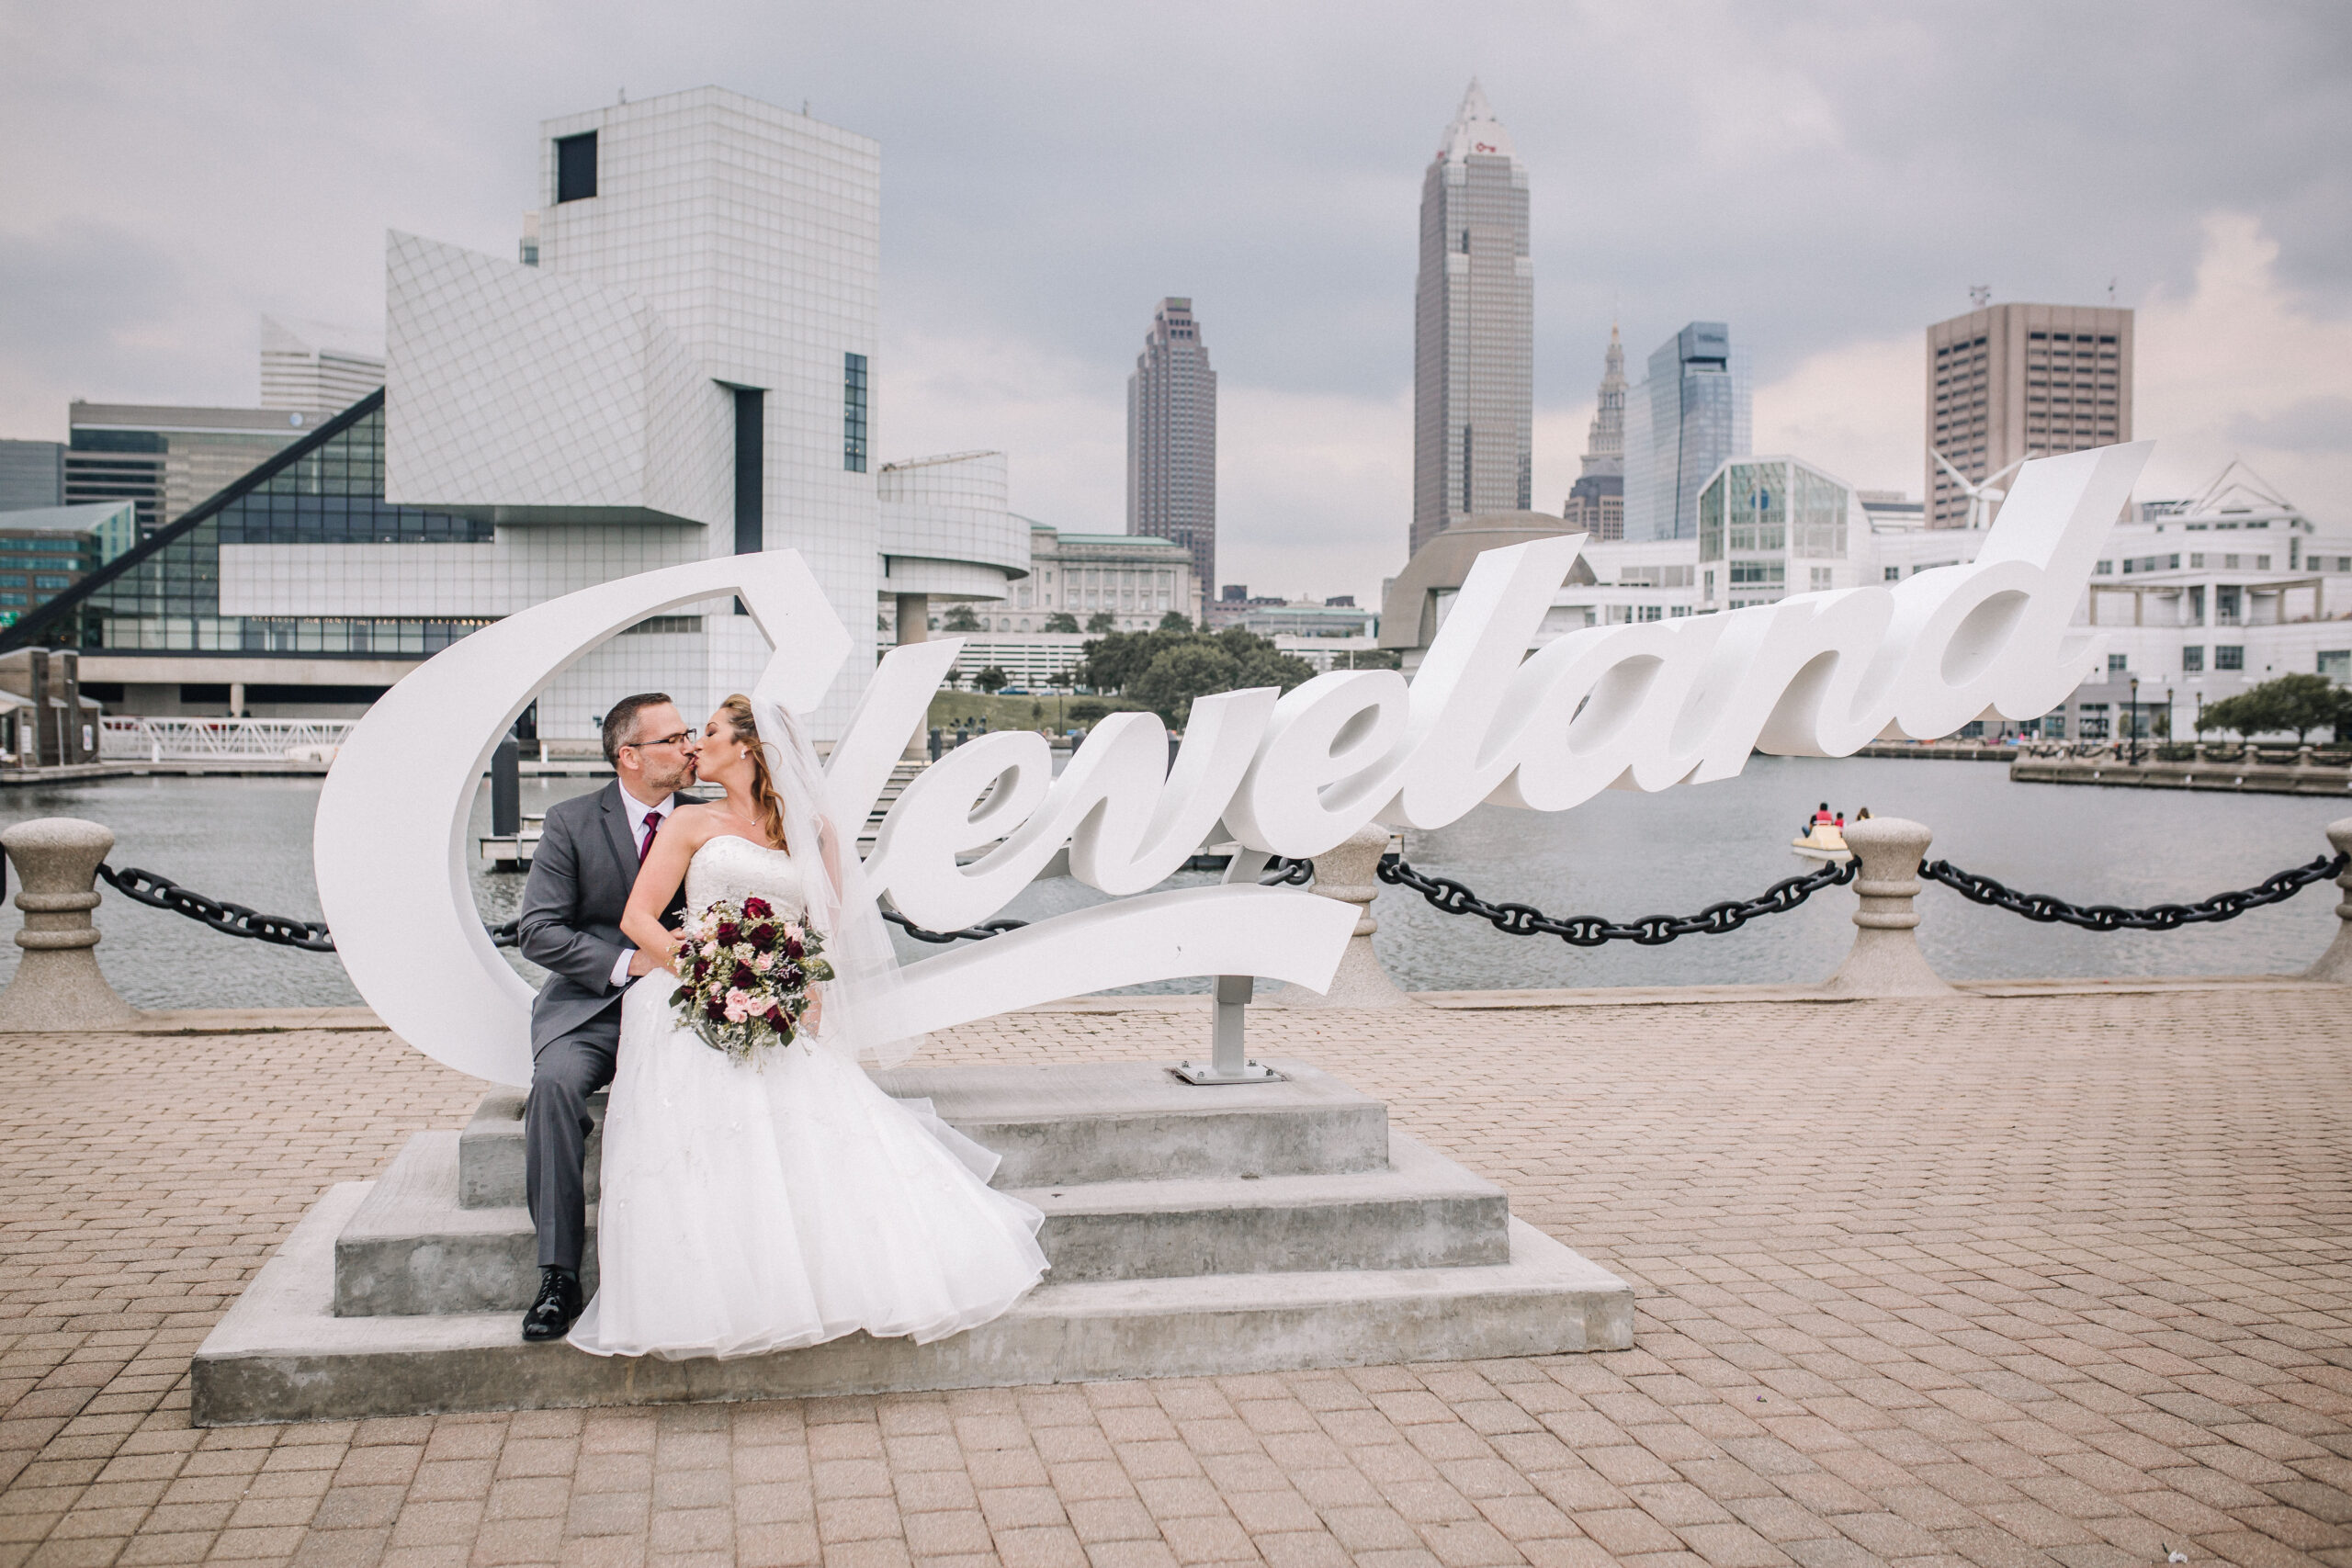 Katie & Greg - Northeast Ohio Wedding Photographer - Lakewood Wedding